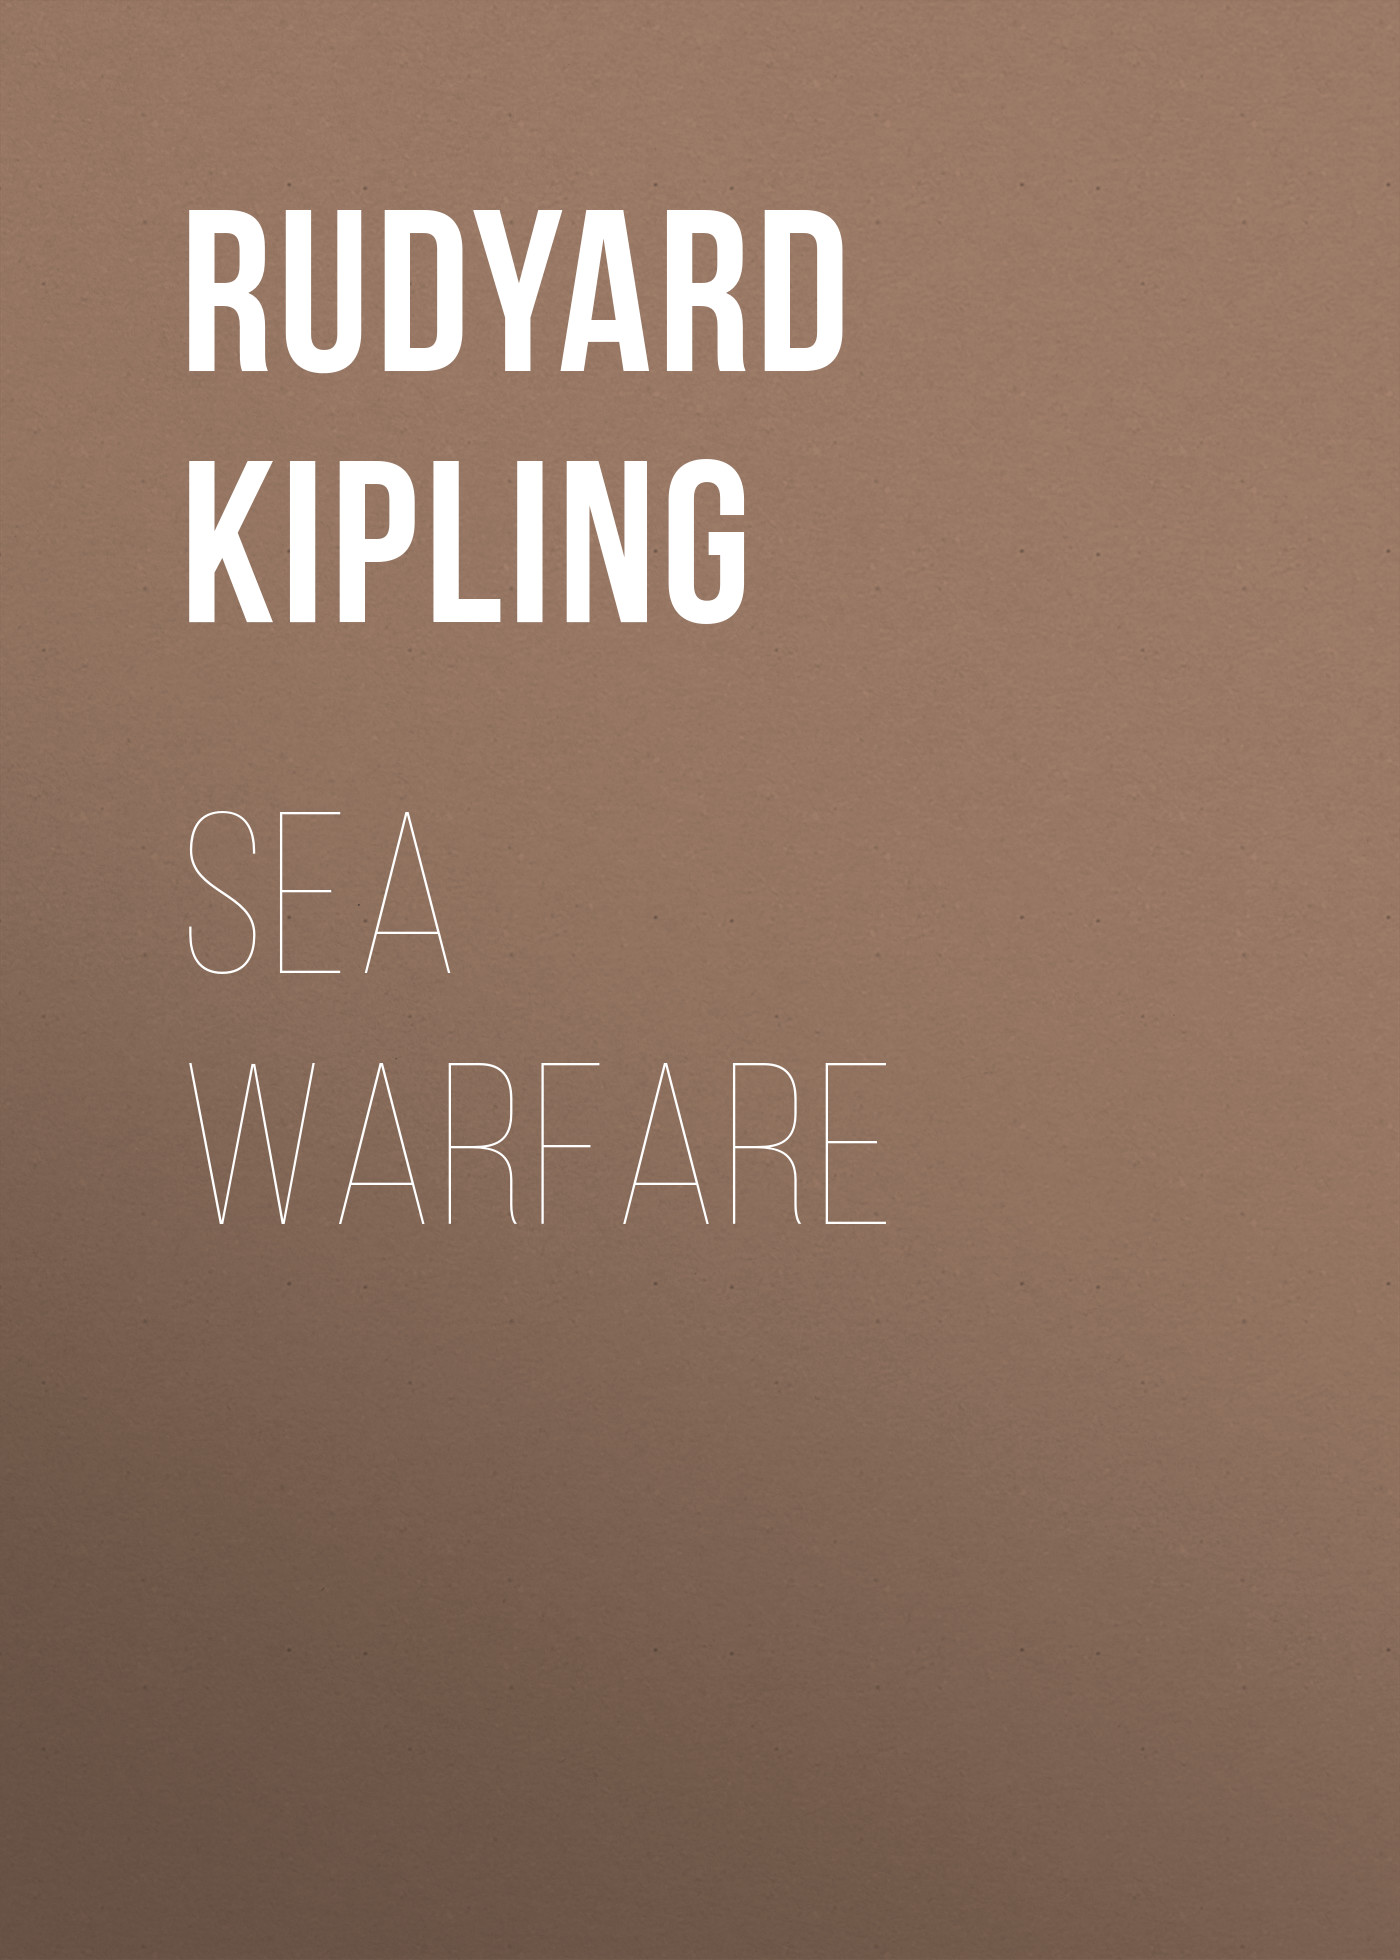 Книга Sea Warfare из серии , созданная Rudyard Kipling, может относится к жанру Литература 20 века, Поэзия, Зарубежная старинная литература, Зарубежная классика. Стоимость электронной книги Sea Warfare с идентификатором 25229820 составляет 0 руб.